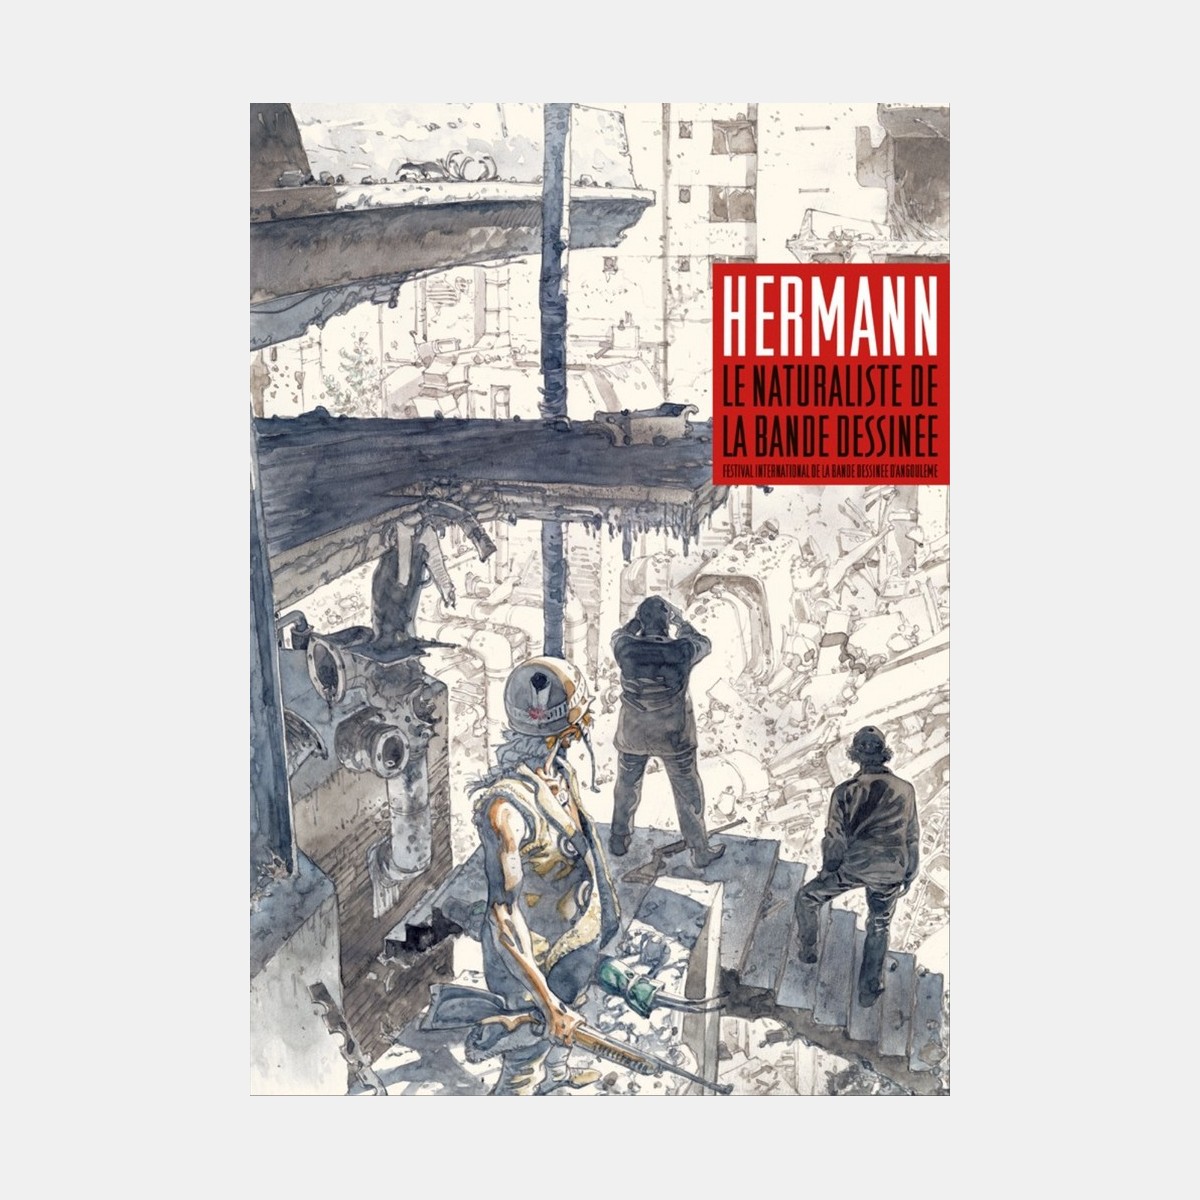 Hermann, le naturaliste de la bande dessinée